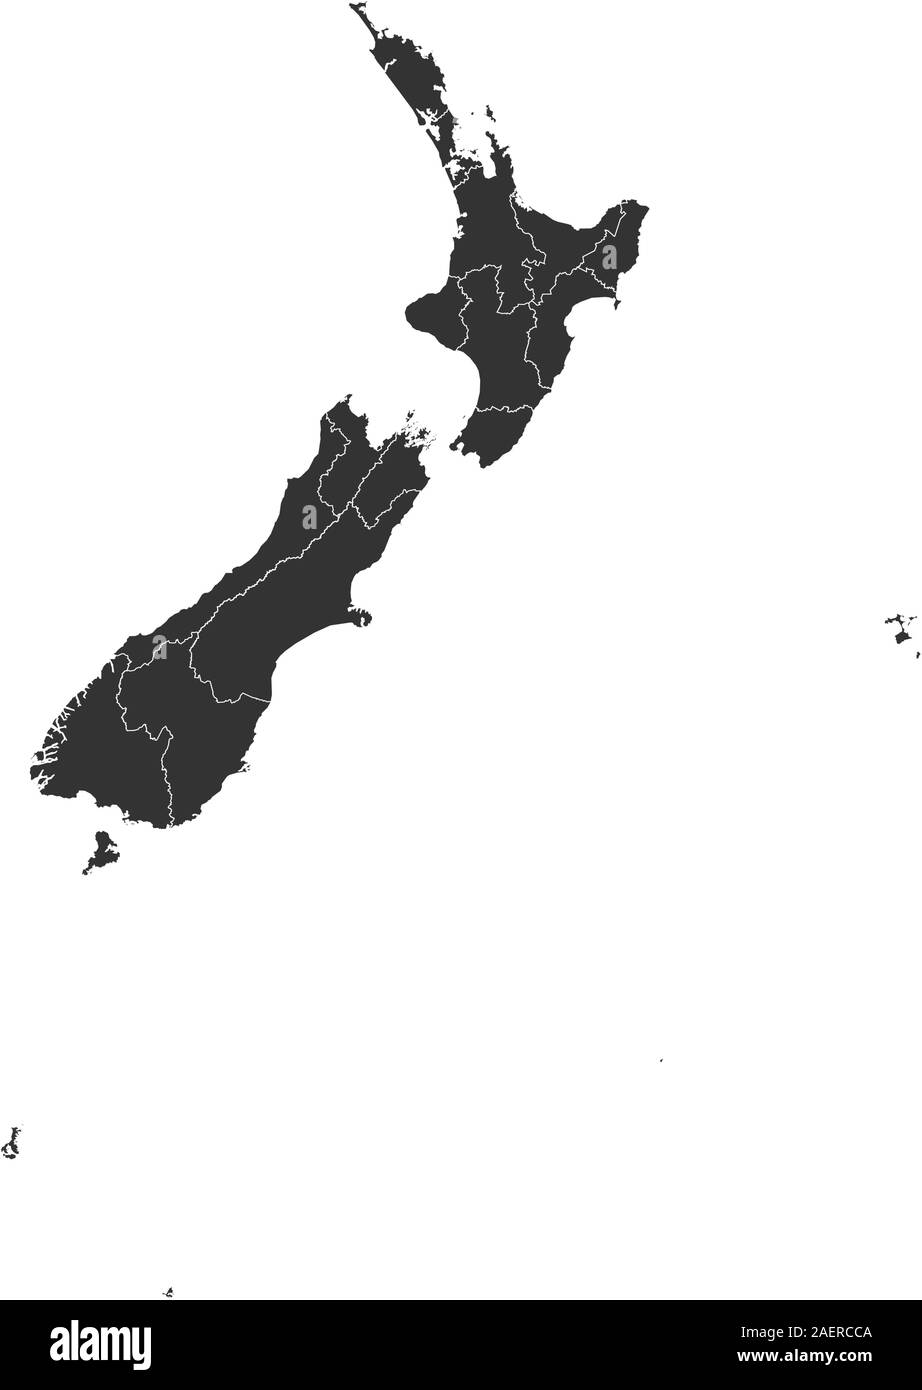 Moderne Neuseeländische politische Karte Vector Illustration. Farbe grau. Inselstaat im Pazifischen Ozean. Stock Vektor